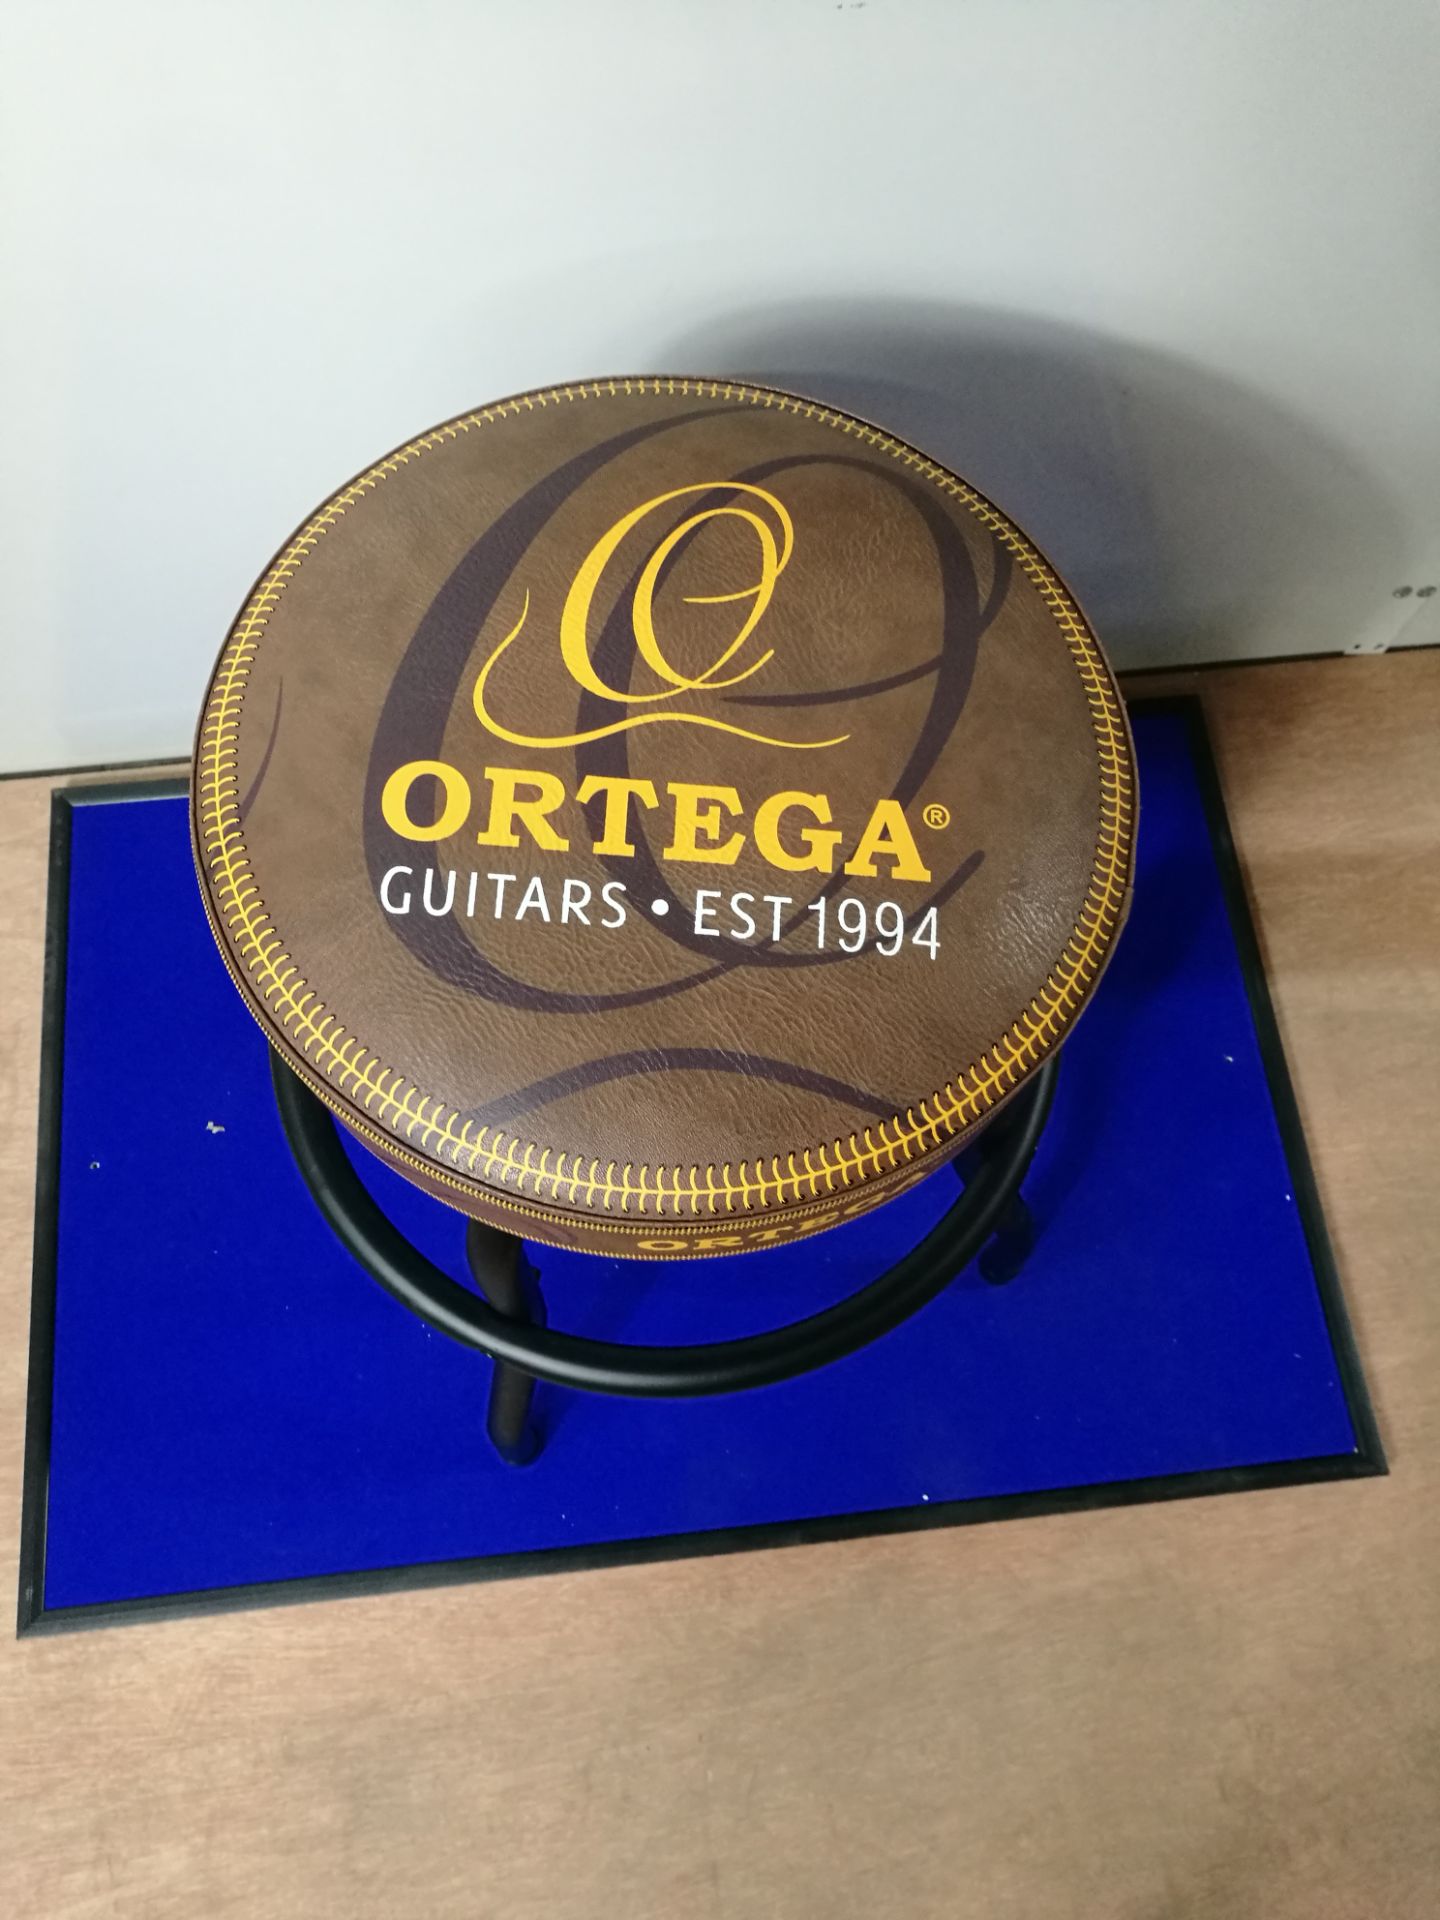 Ortega Guitars Bar Stool 24" - Brown Leather (OBS24V2) - Image 2 of 2